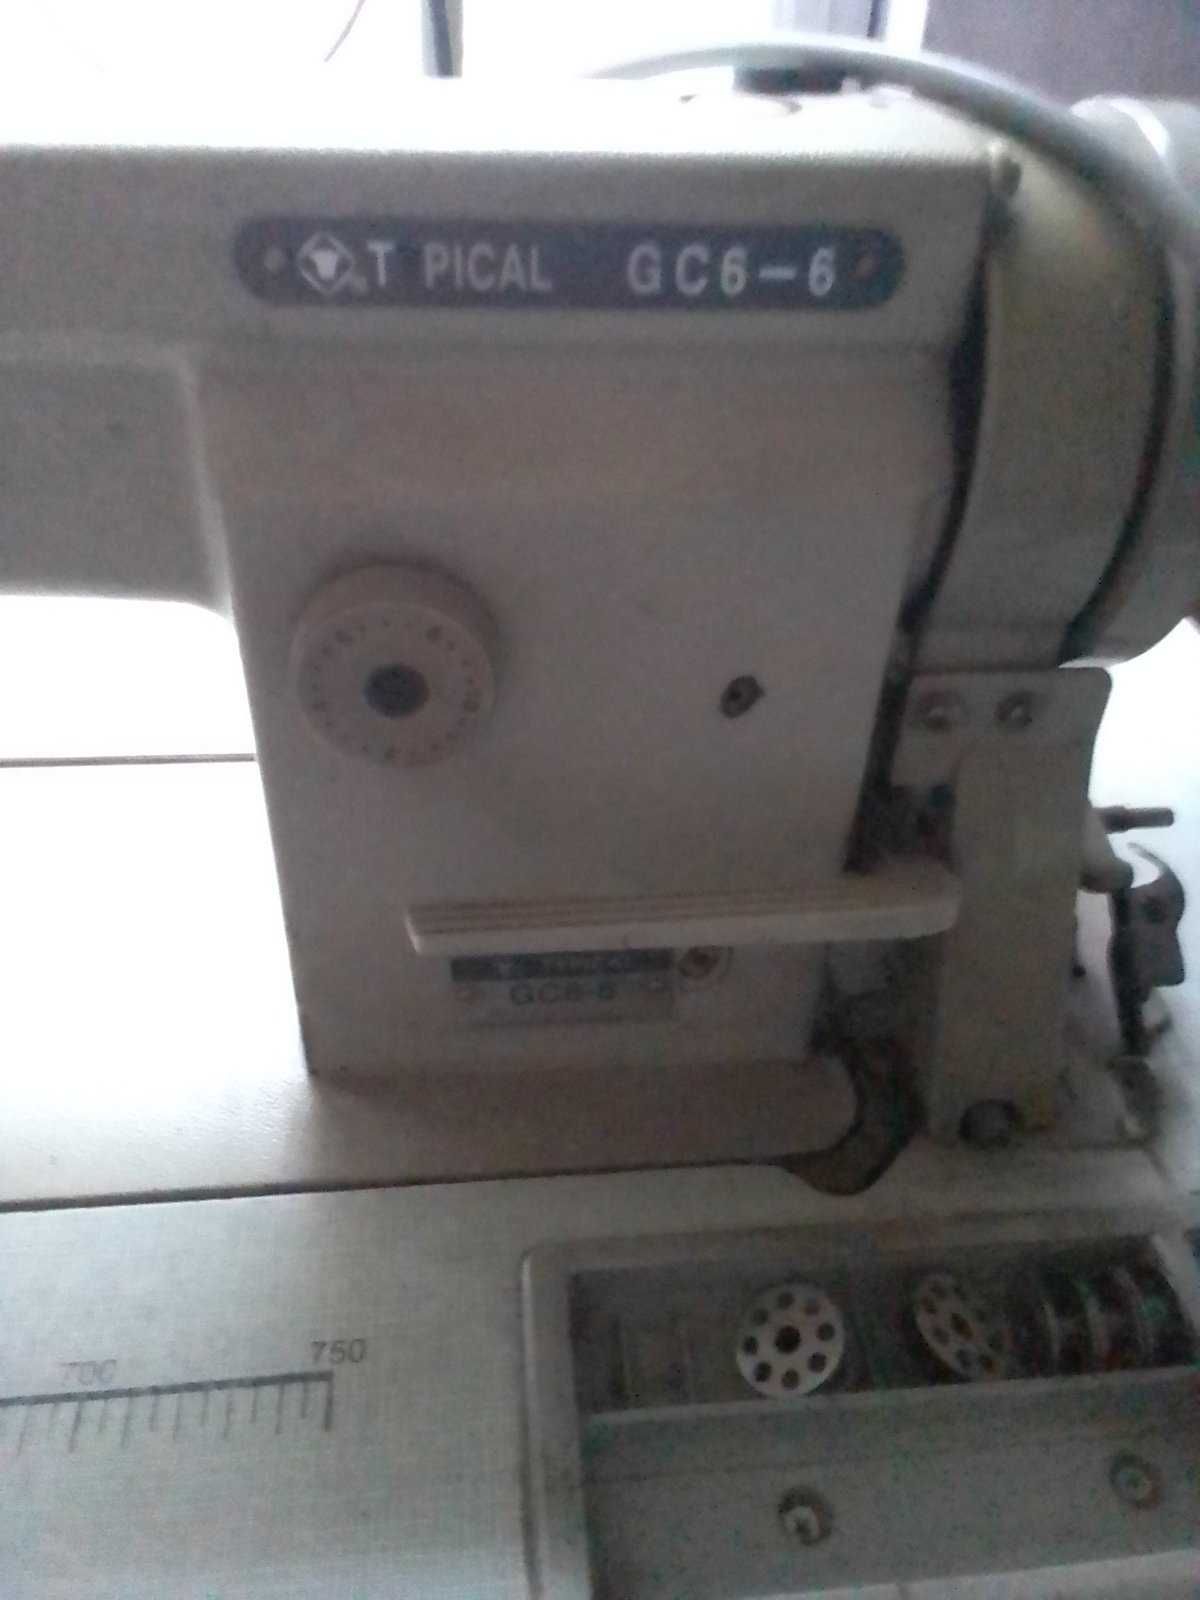 Машинка швейная Typical GC 6-6 производственная.